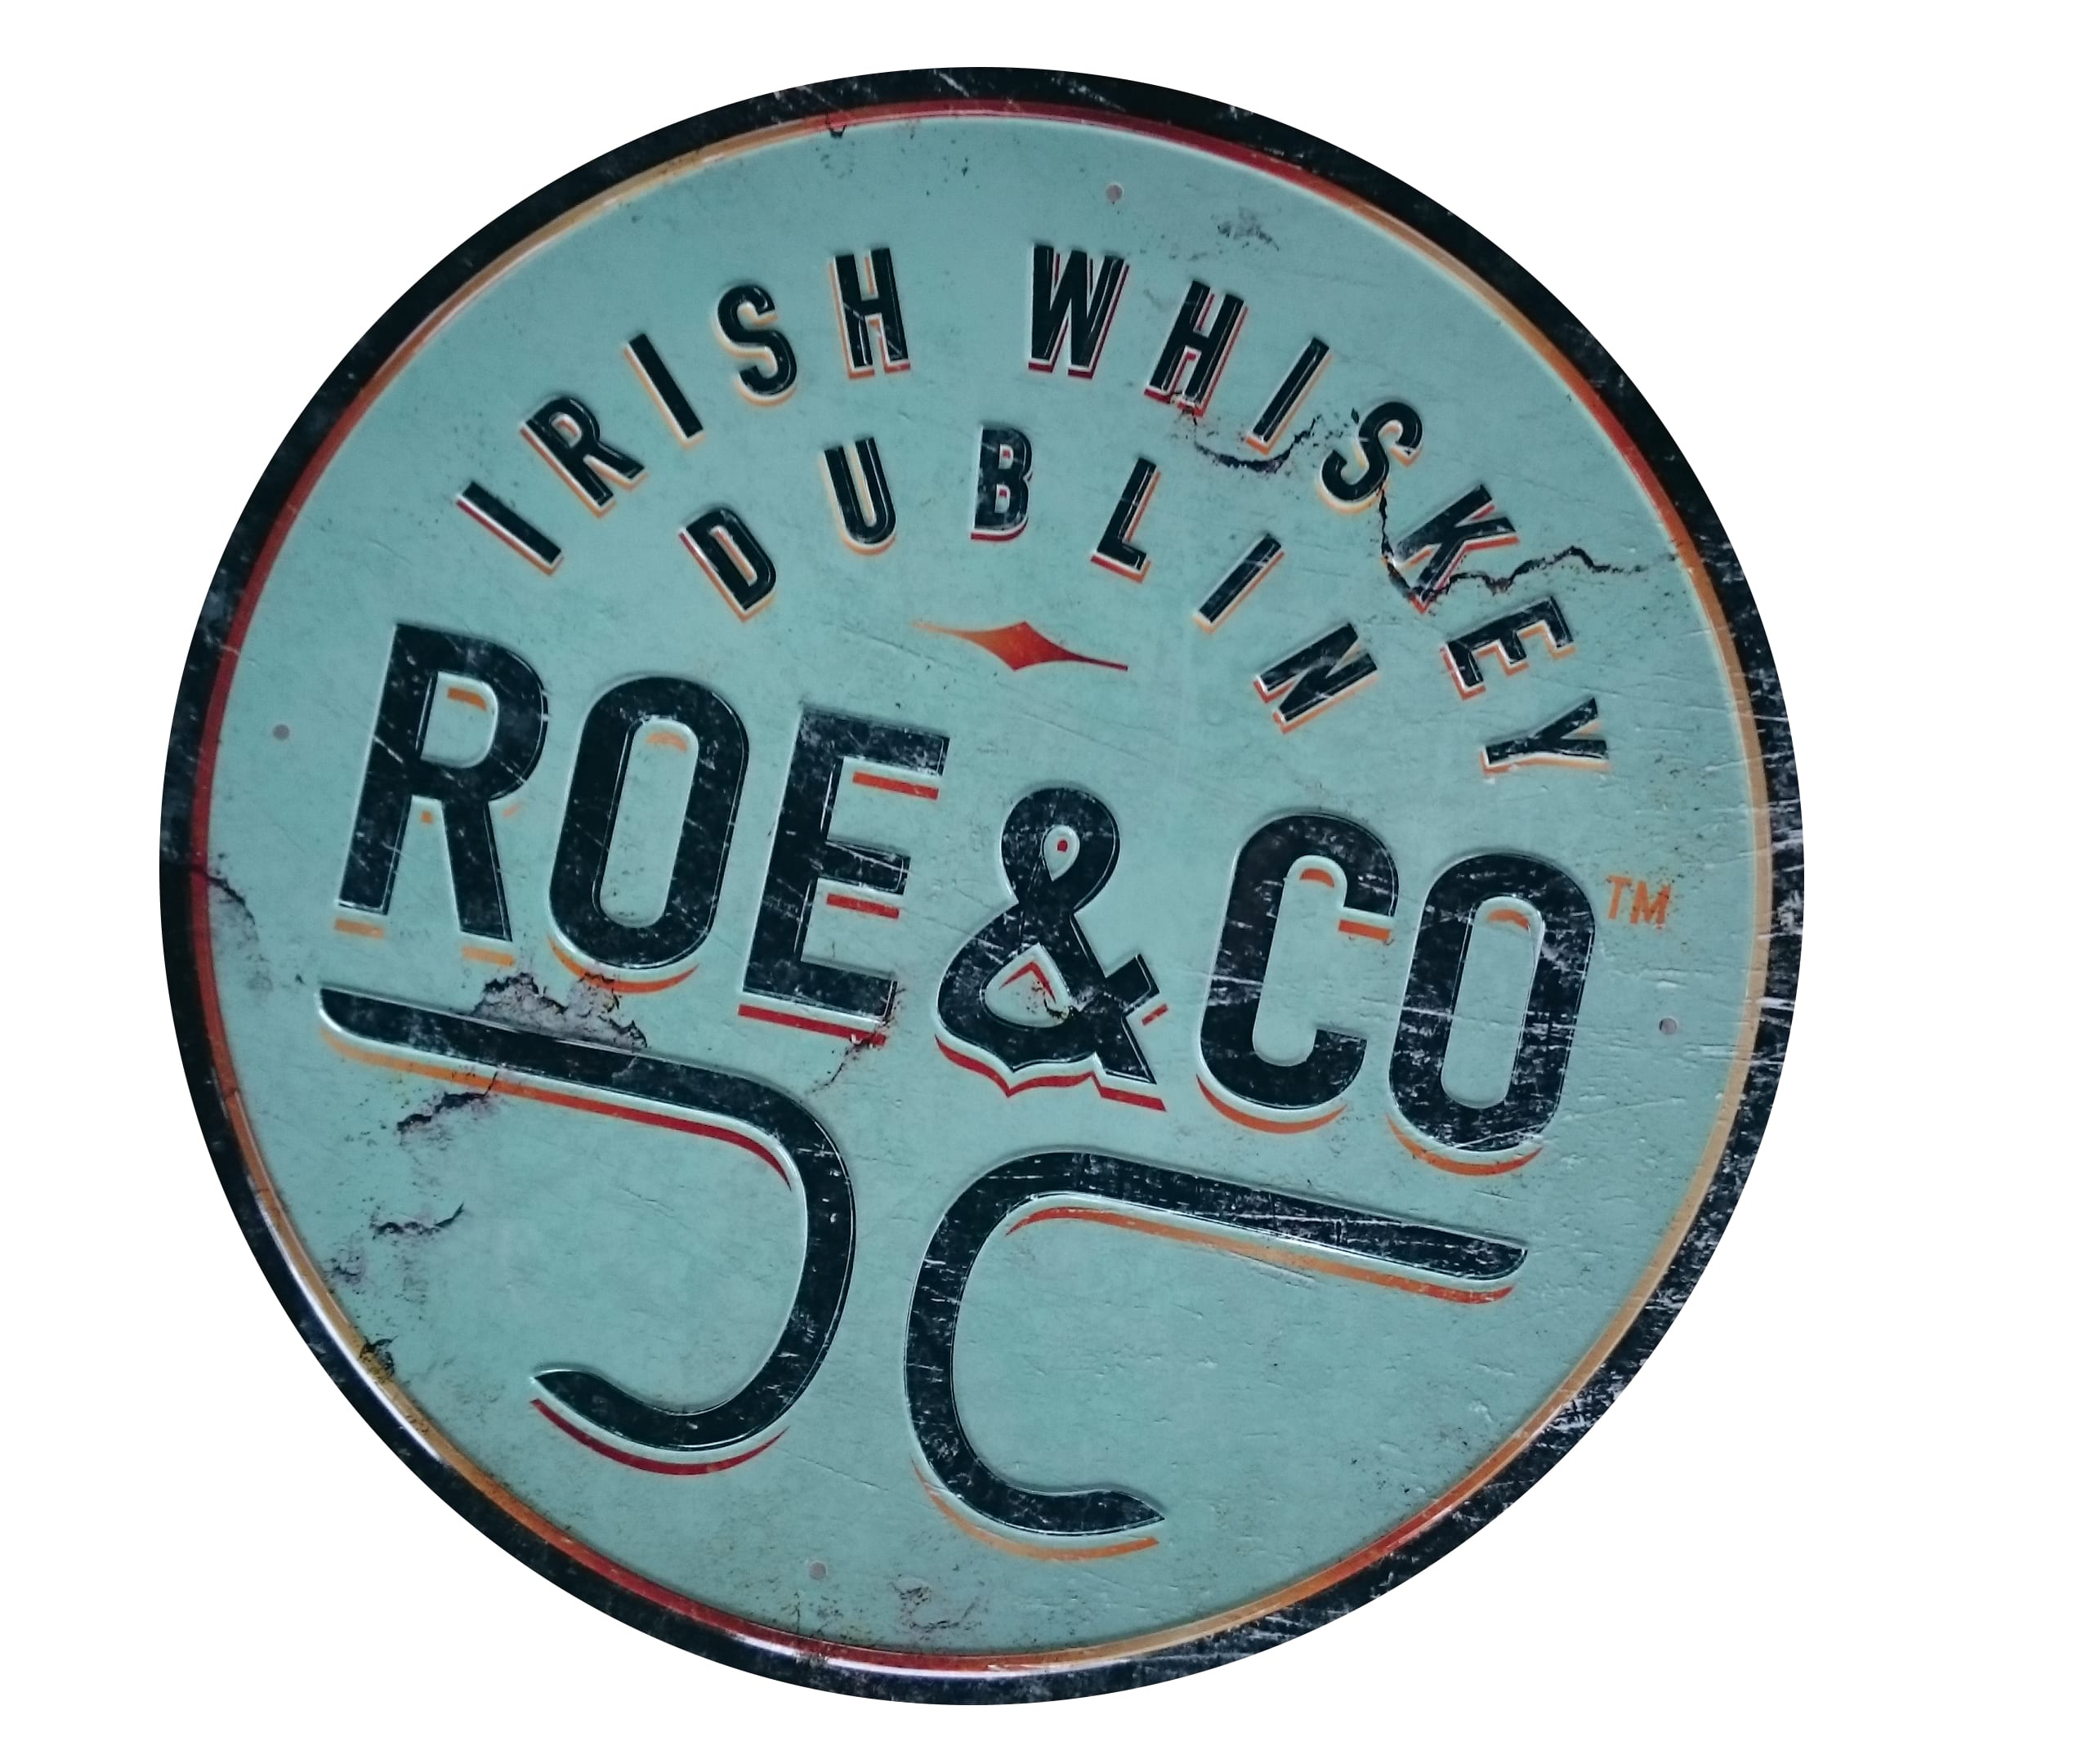 Roe & Co Distilling Company